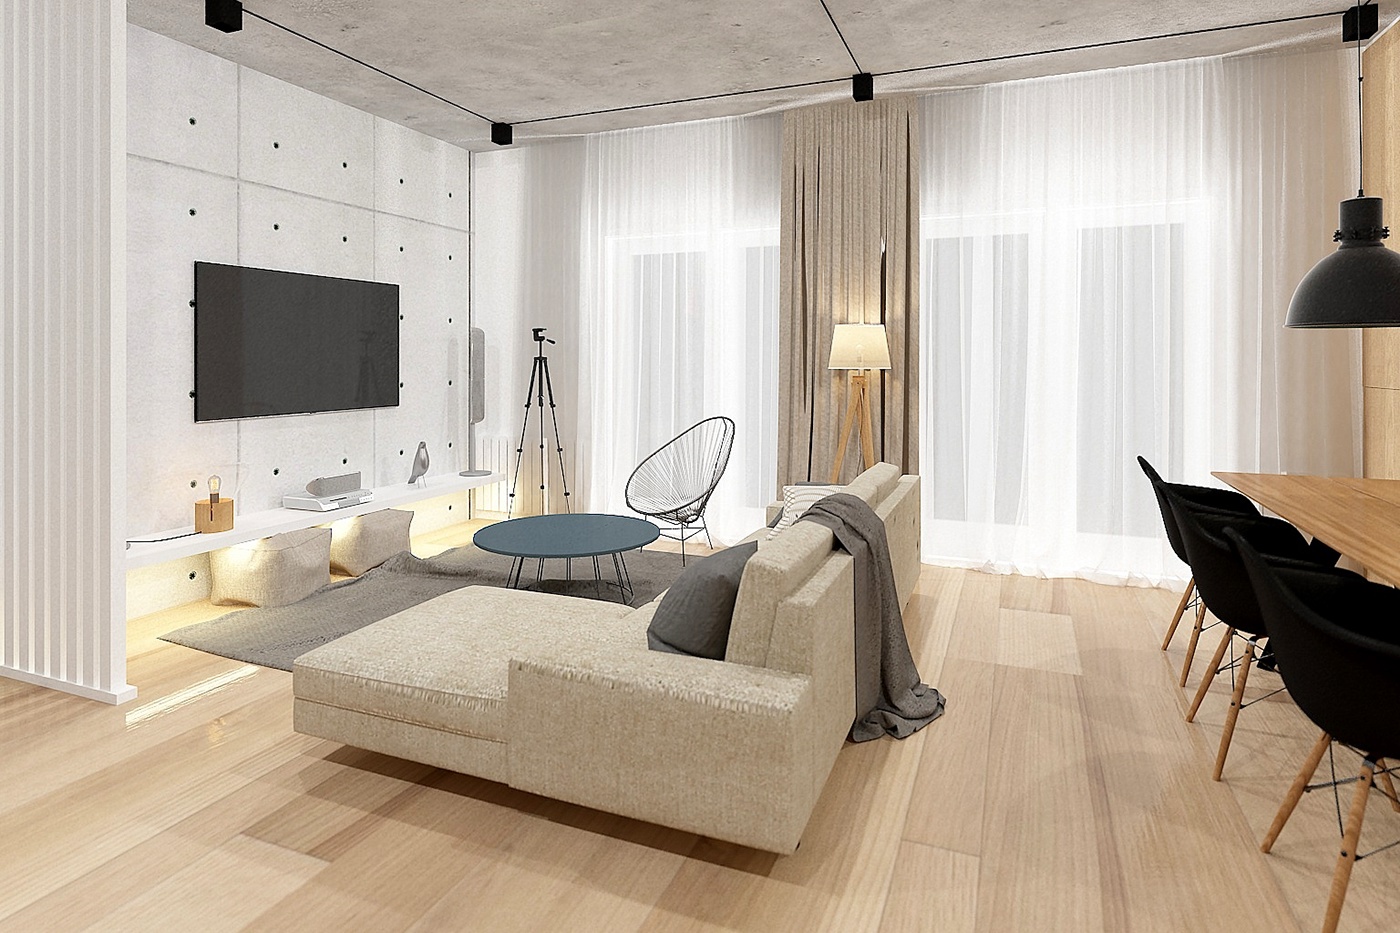 Interior design apartment industrial CGI digital art visualization